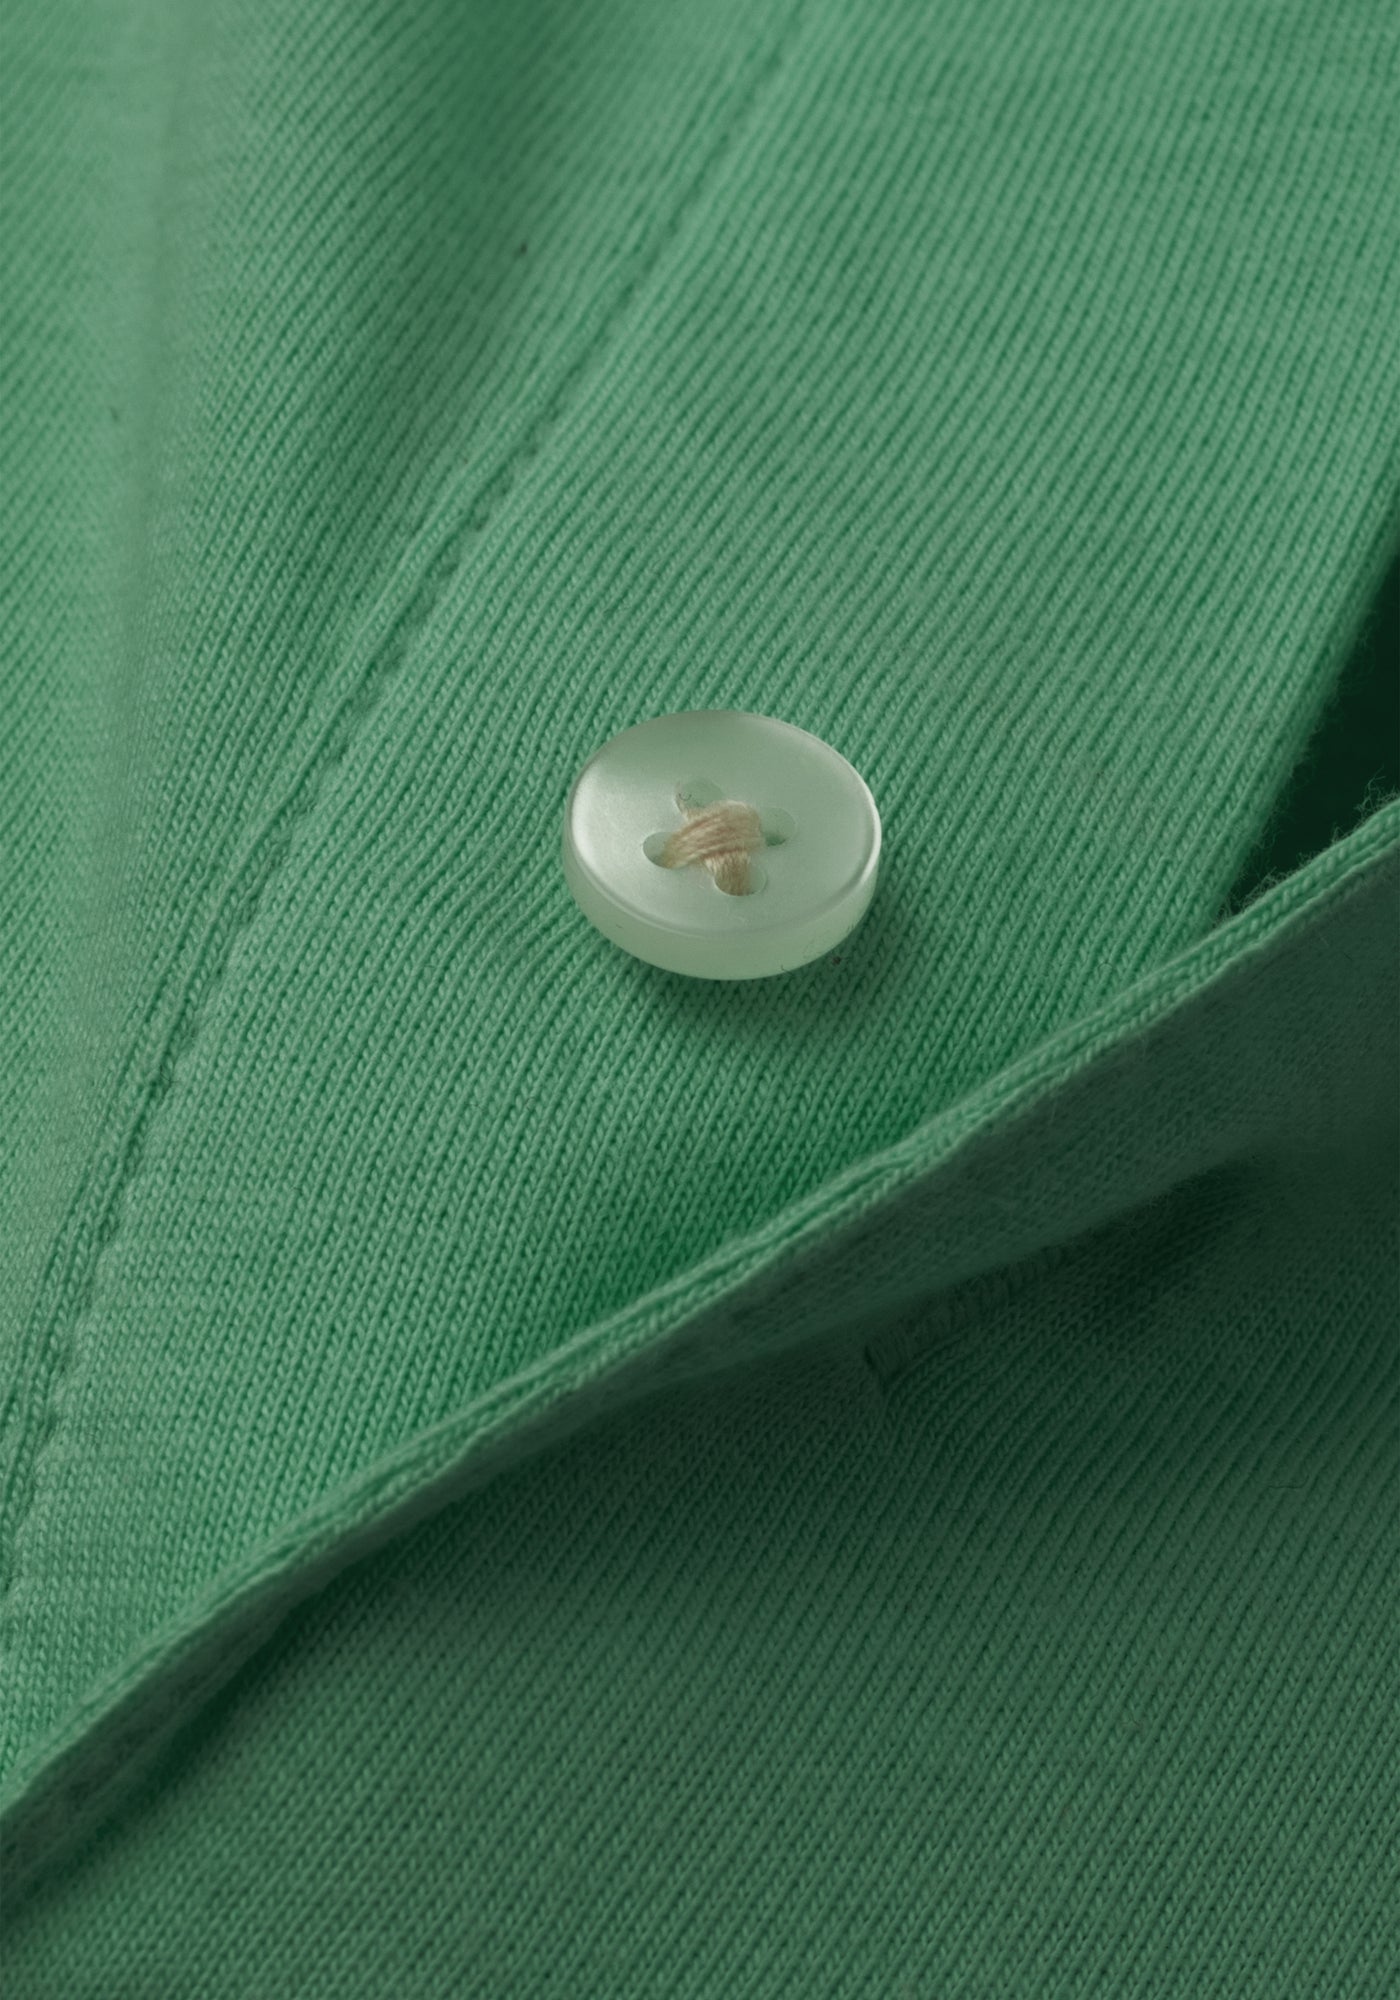 Jade Green Cotton Polo Shirt